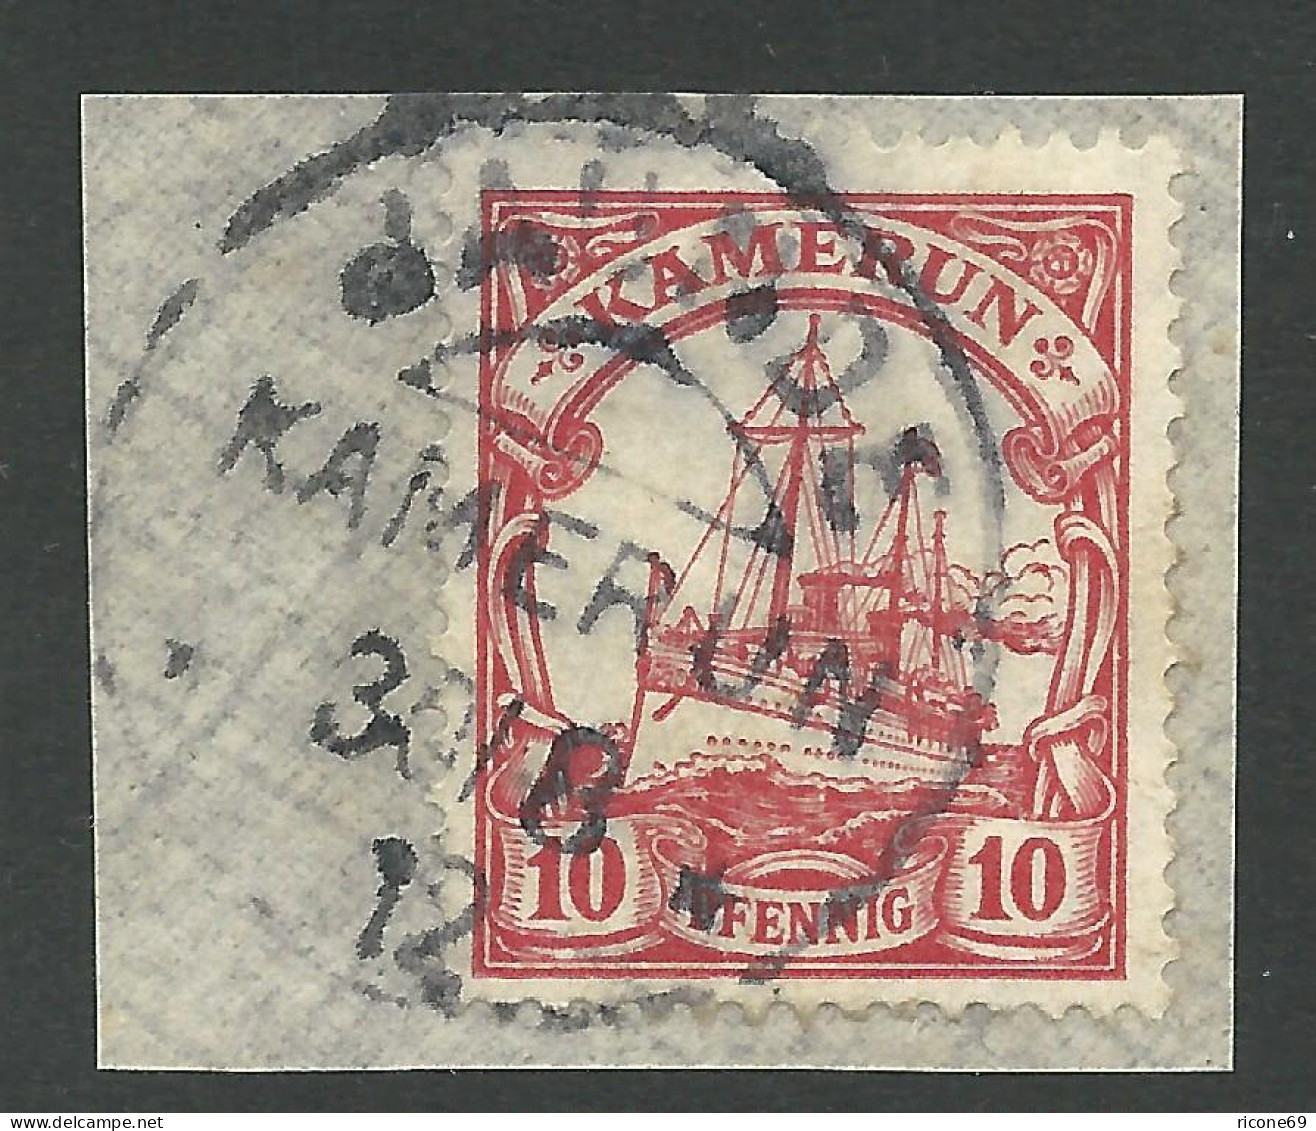 Kamerun 22, 10 Pf. Auf Briefstück M. Stpl. JAUNDE - Cameroun